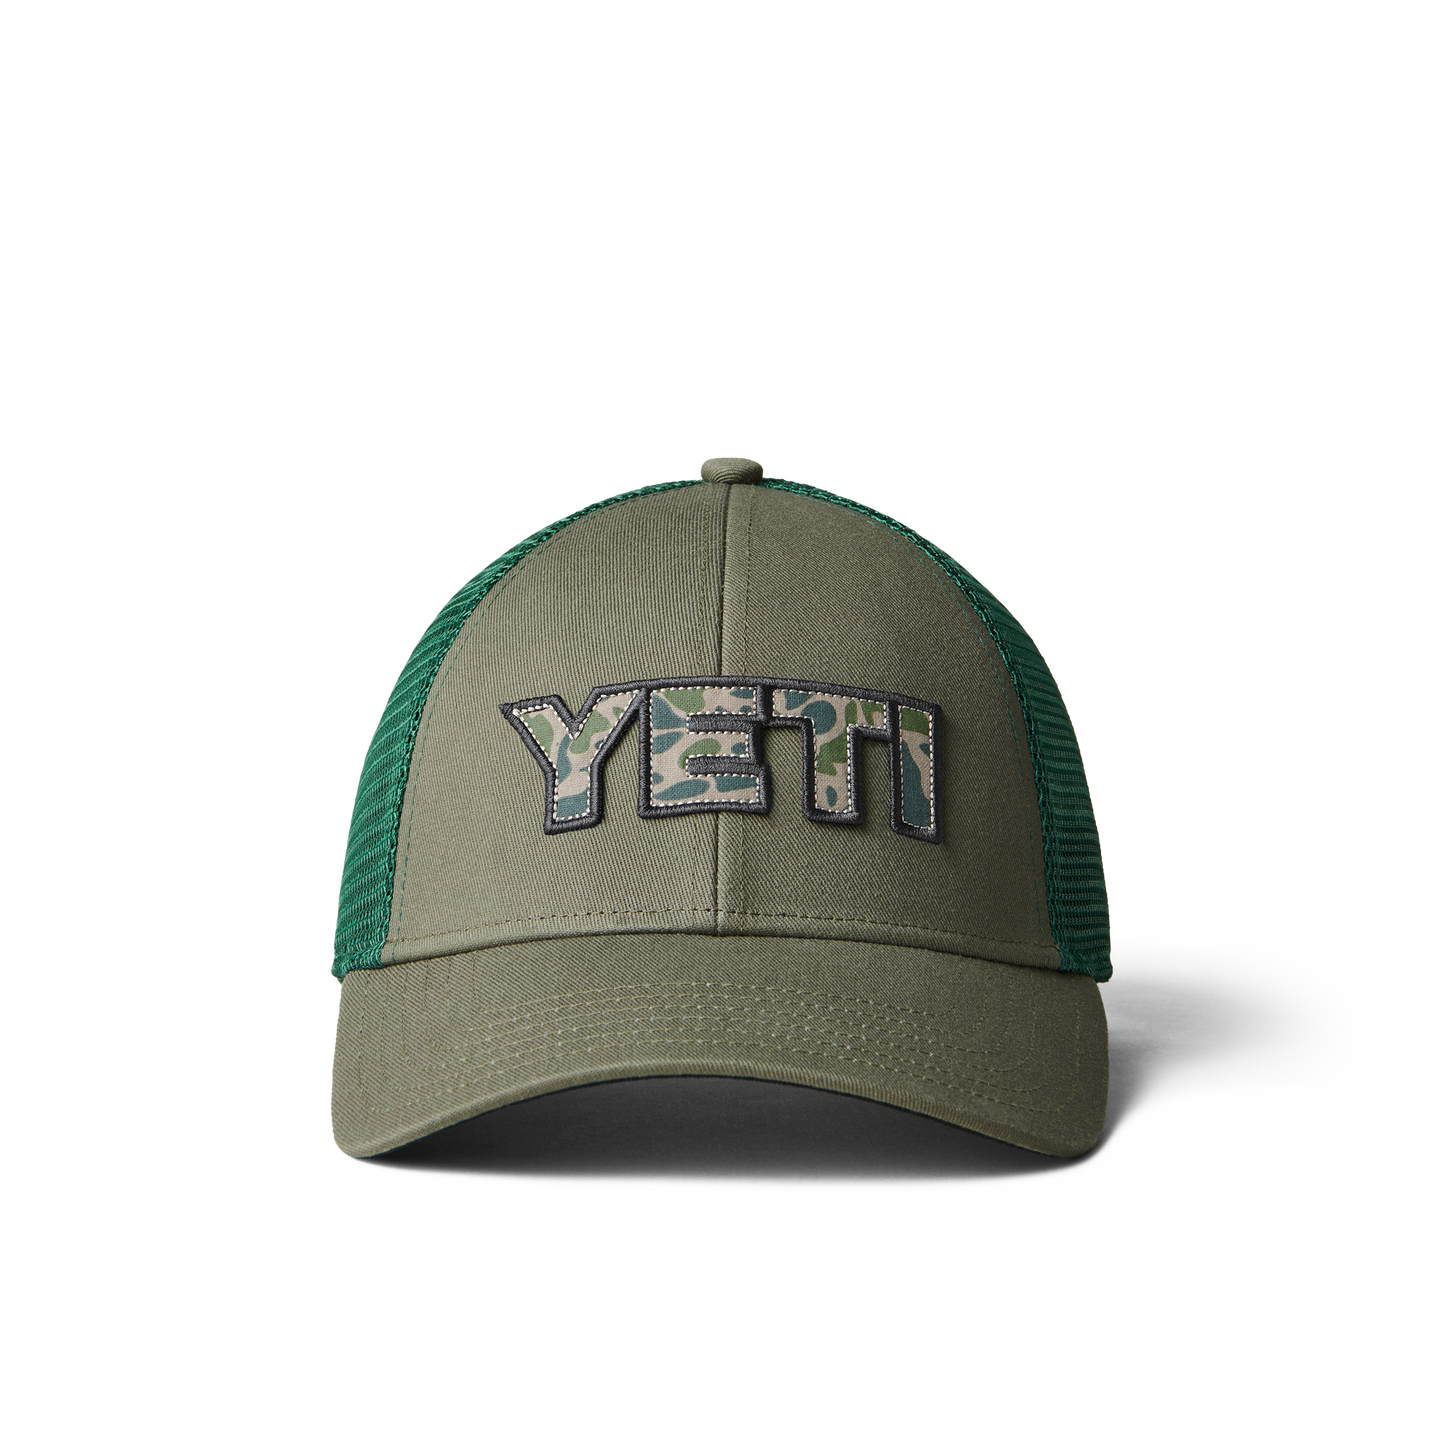 YETI Cappello Trucker logo badge stampa mimetica Olive